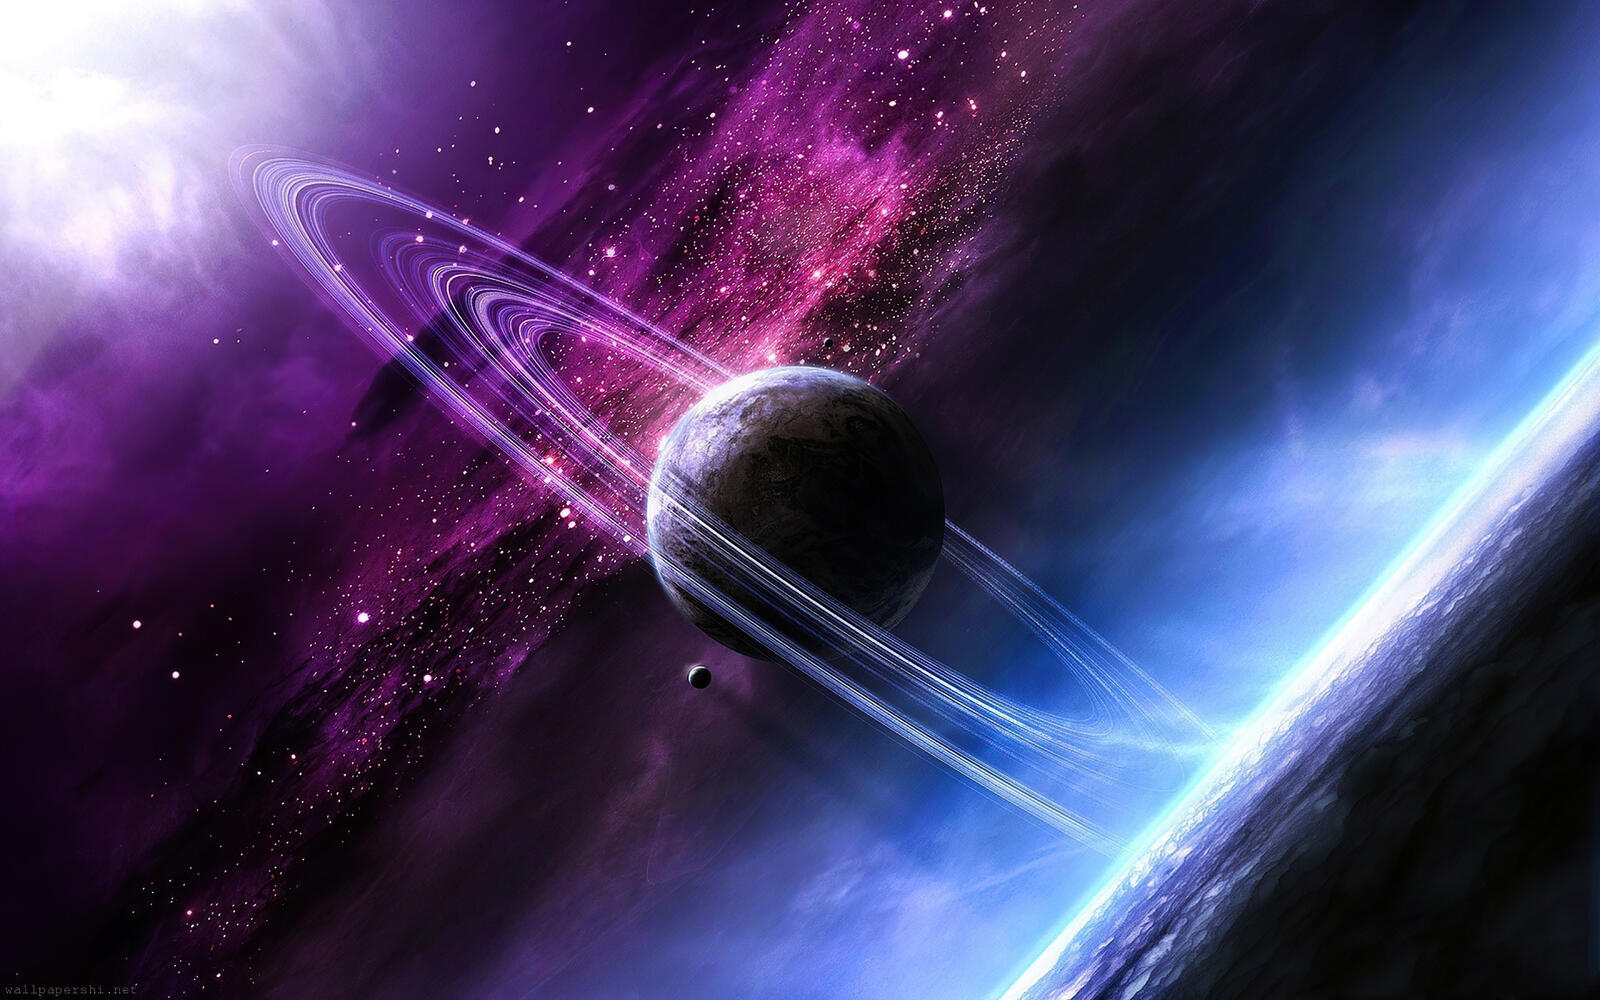 Бесплатное фото Сатурн в фантастическом космосе